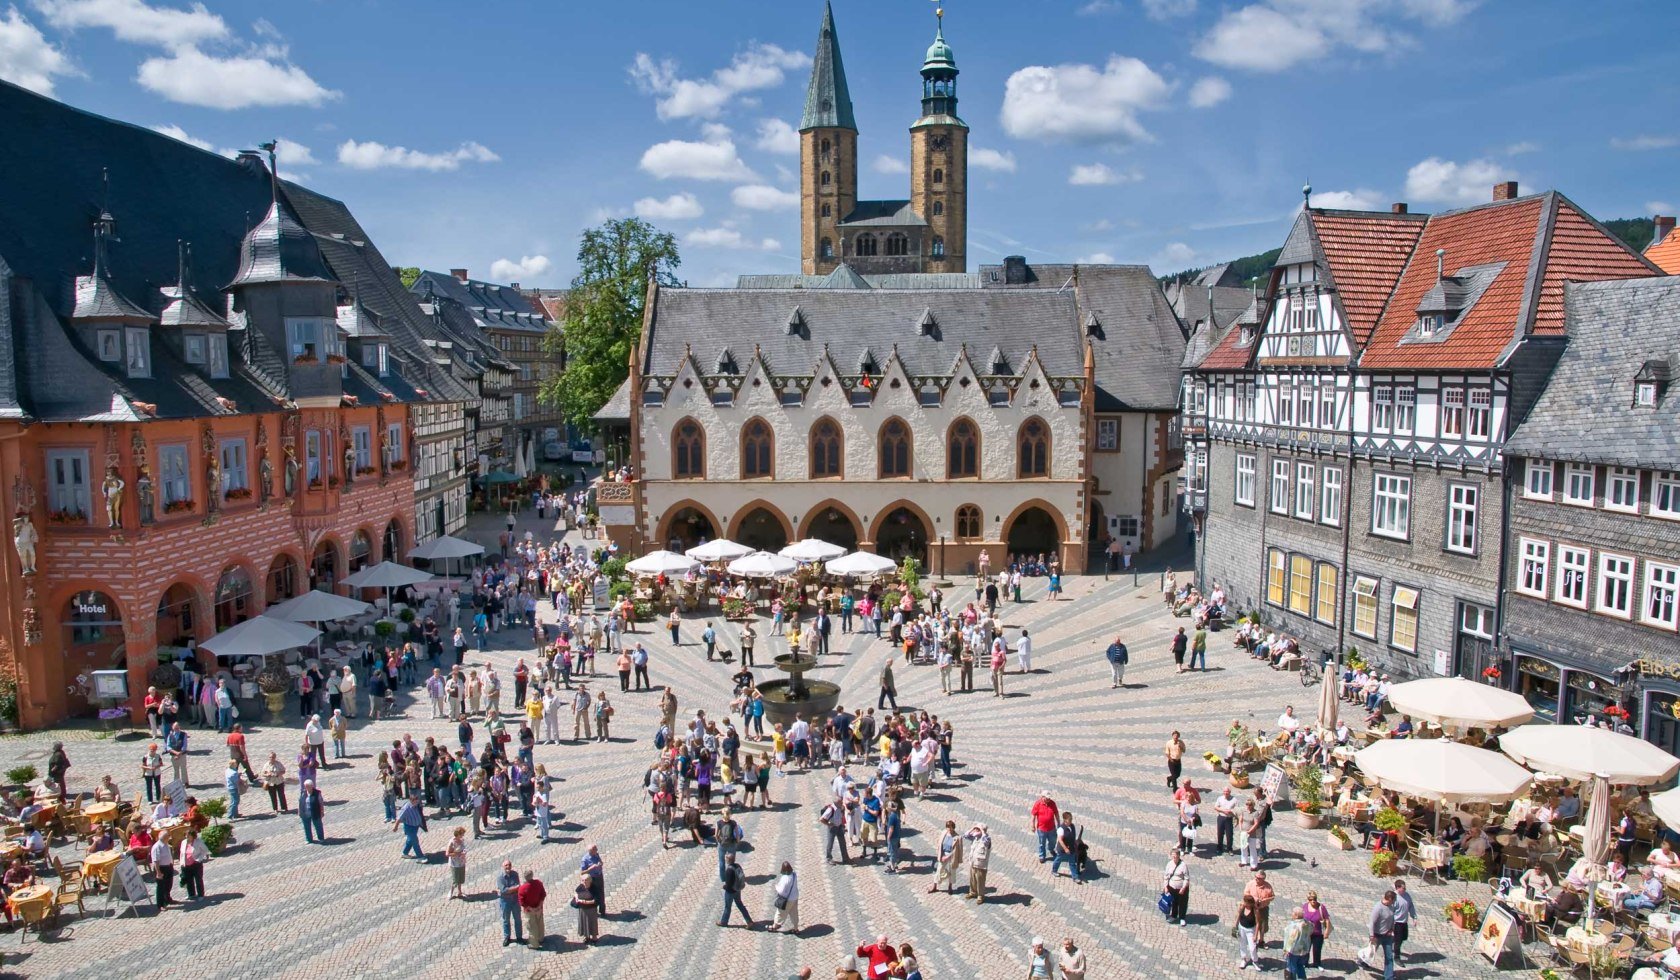 Marktplatz von Goslar, © GOSLAR marketing gmbh / Stefan Schiefer